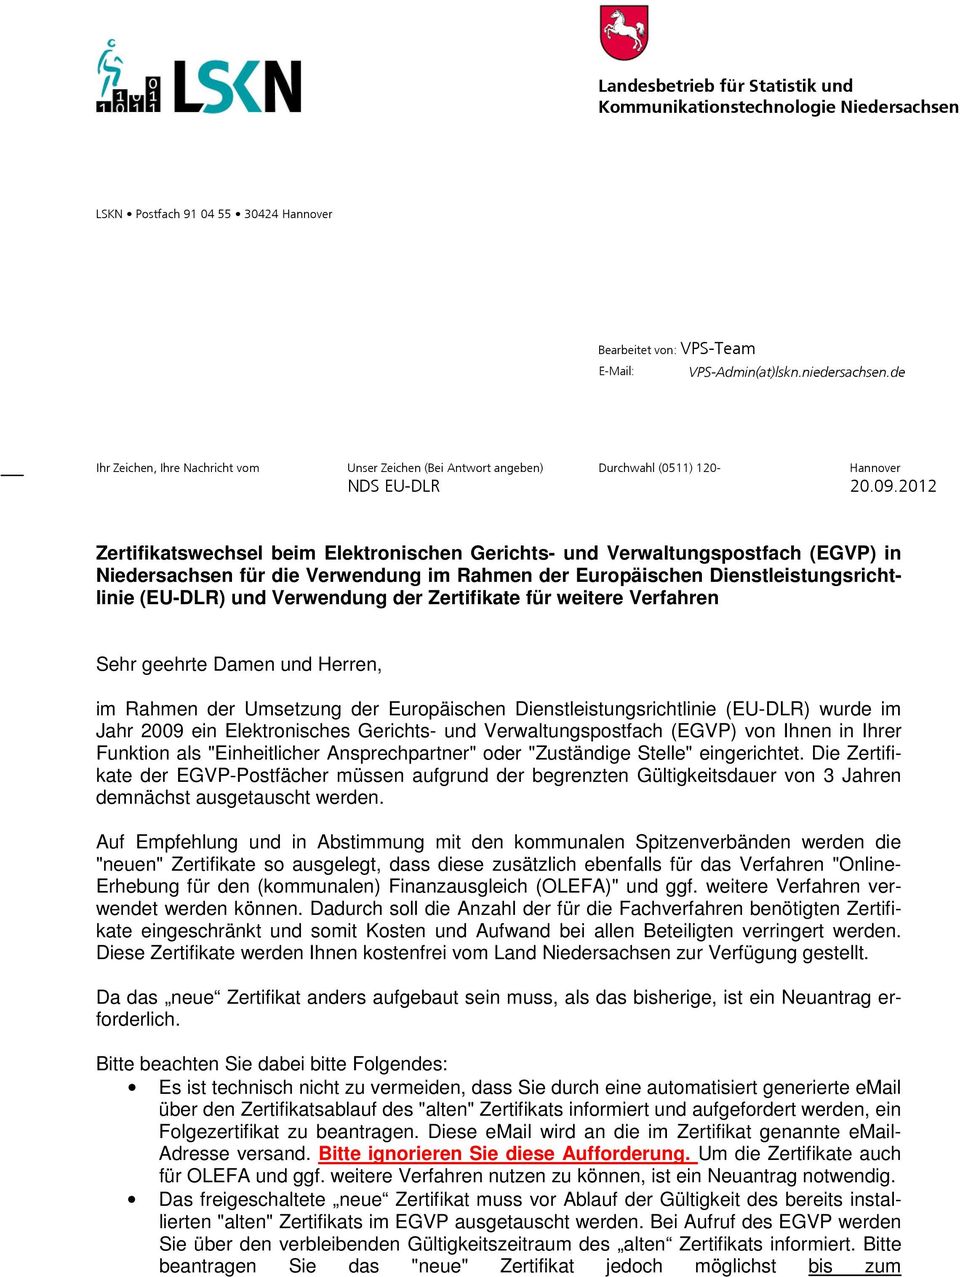 2012 Zertifikatswechsel beim Elektronischen Gerichts- und Verwaltungspostfach (EGVP) in Niedersachsen für die Verwendung im Rahmen der Europäischen Dienstleistungsrichtlinie (EU-DLR) und Verwendung